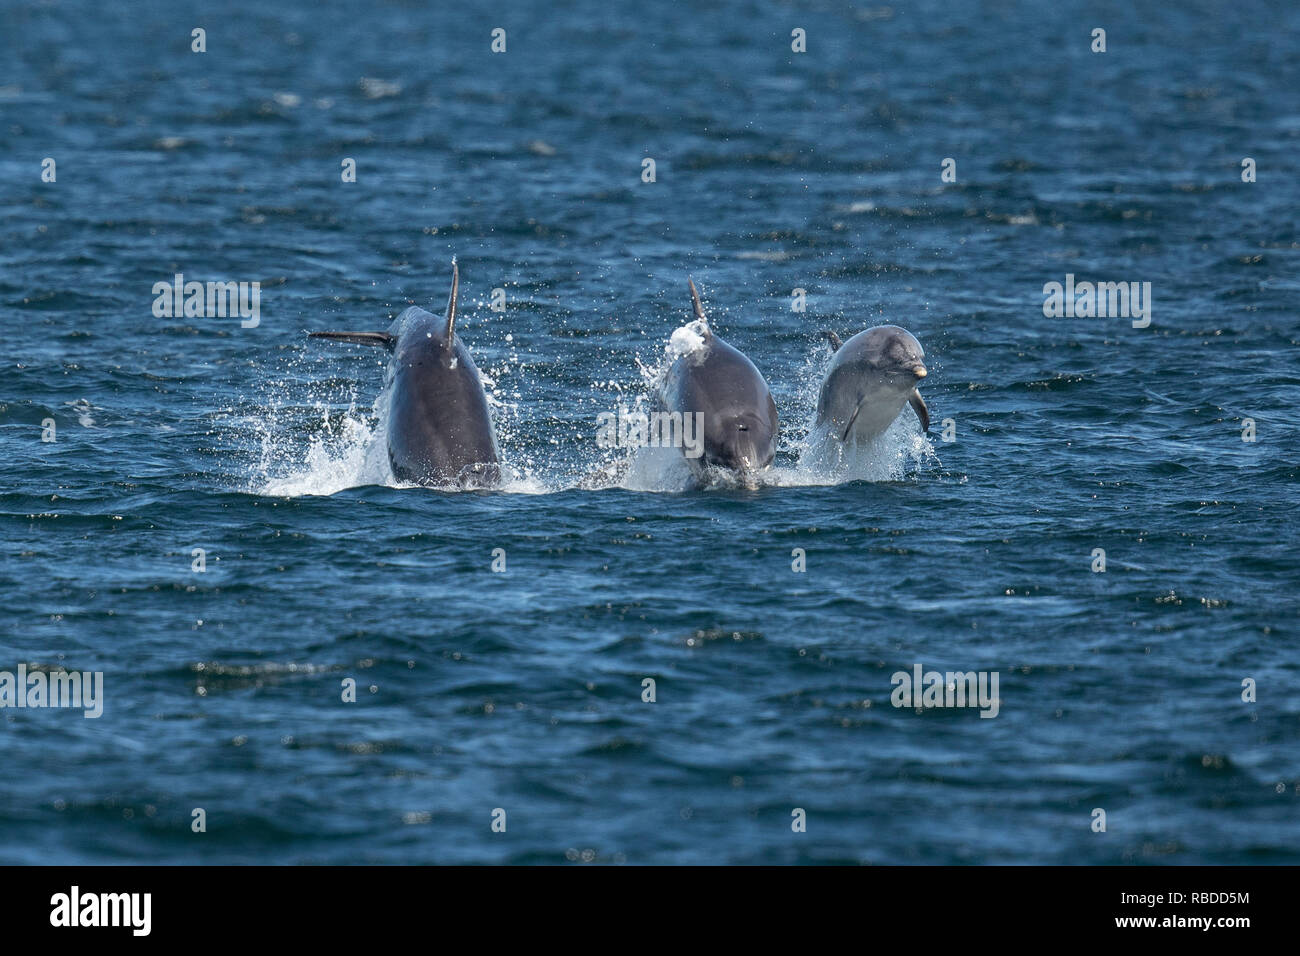 INVERNESS, Escocia: tres delfines mulares carrera a través de las aguas en el punto Chanonry cerca de Inverness, Escocia. Tres divertidos delfines pone en un impresionante despliegue de curiosos en como han infringido y voltear a través de las aguas del punto Chanonry cerca de Inverness. Los delfines mulares incluida la miel, un joven de 11 años de edad y madre de dos jóvenes también pueden ser vistos nadando en perfecta sintonía, apareciendo a la raza mutuamente a través del agua en las Tierras Altas de Escocia. WDC / Charlie Phillips / mediadrumworld.com Foto de stock